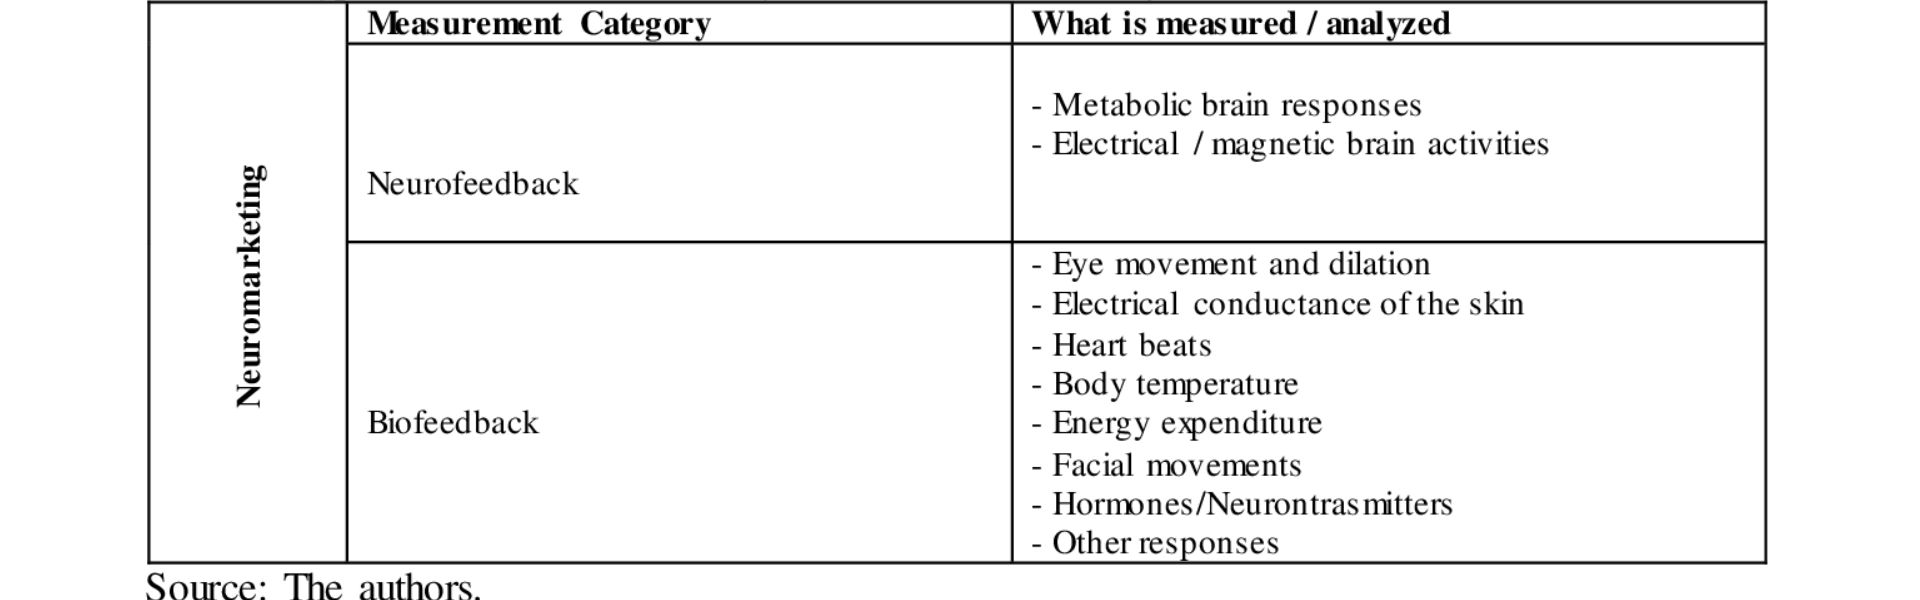 Understanding Neuromarketing